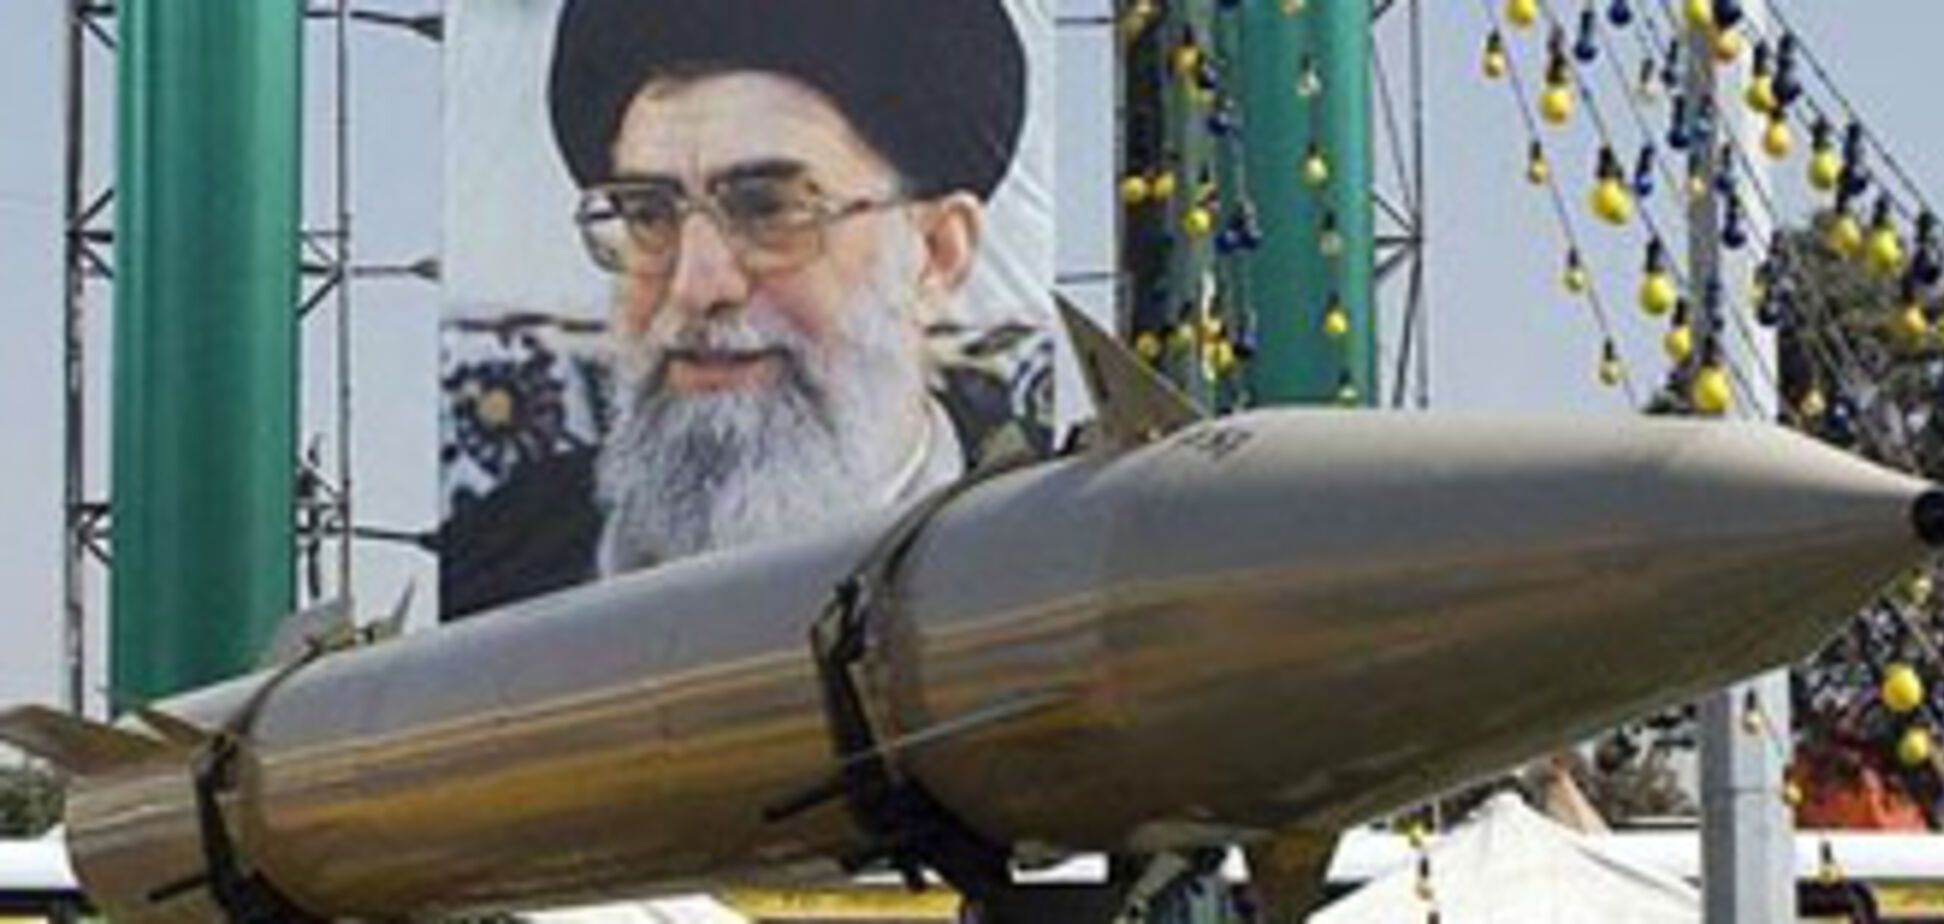 Іран вважає атомну бомбу великим гріхом